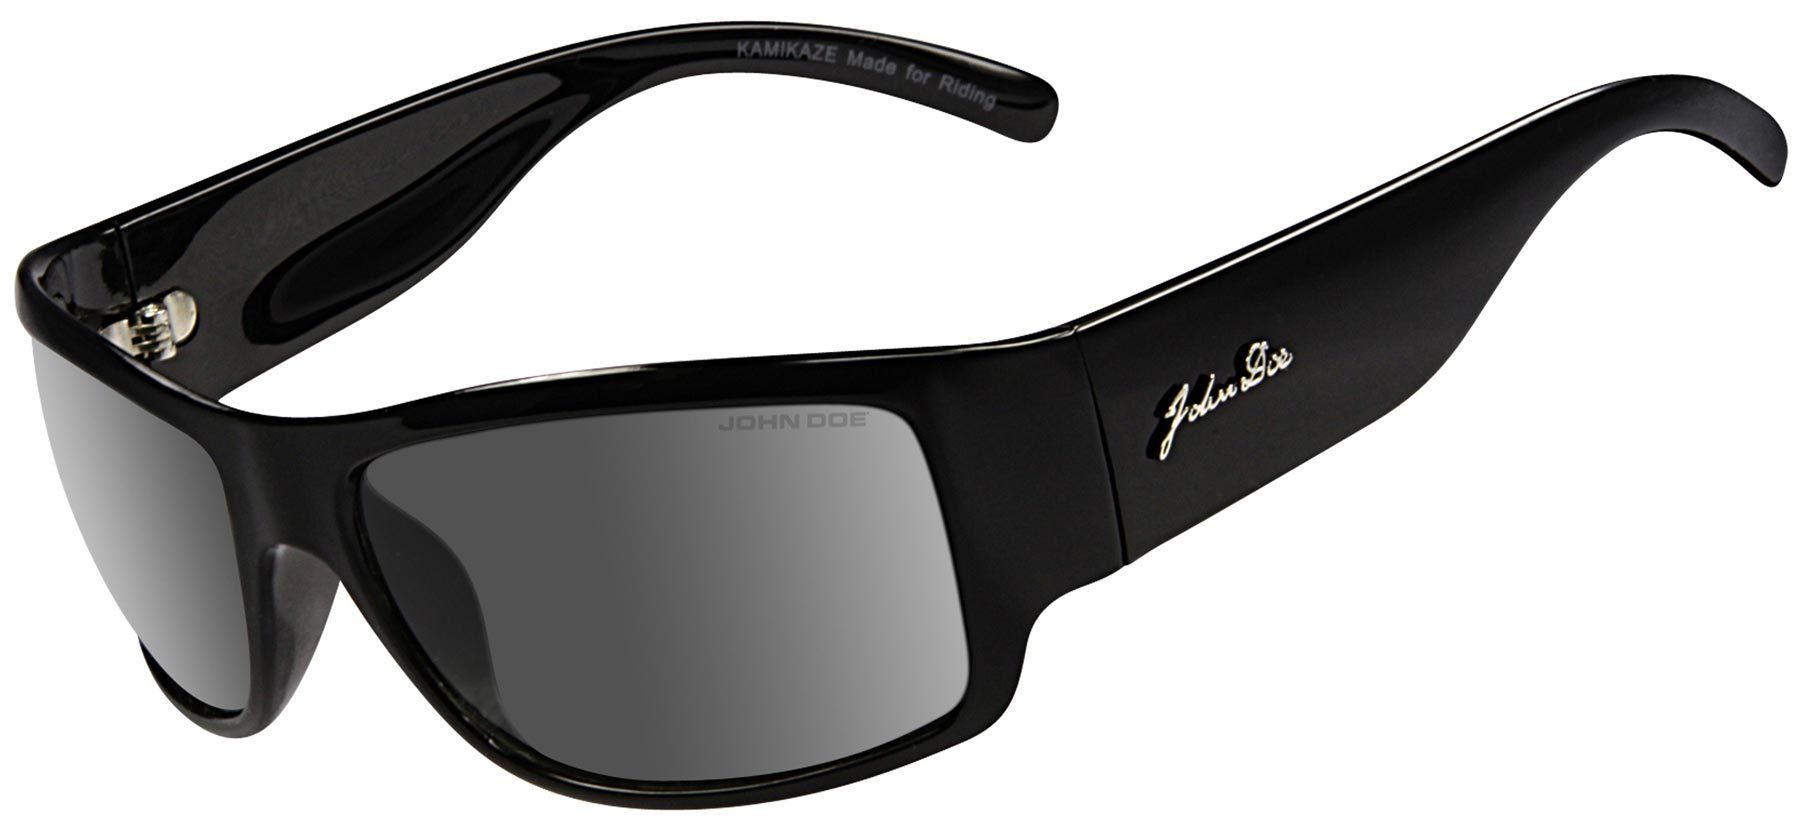 John Doe Kamikaze Sunglasses, black, black, Size One Size